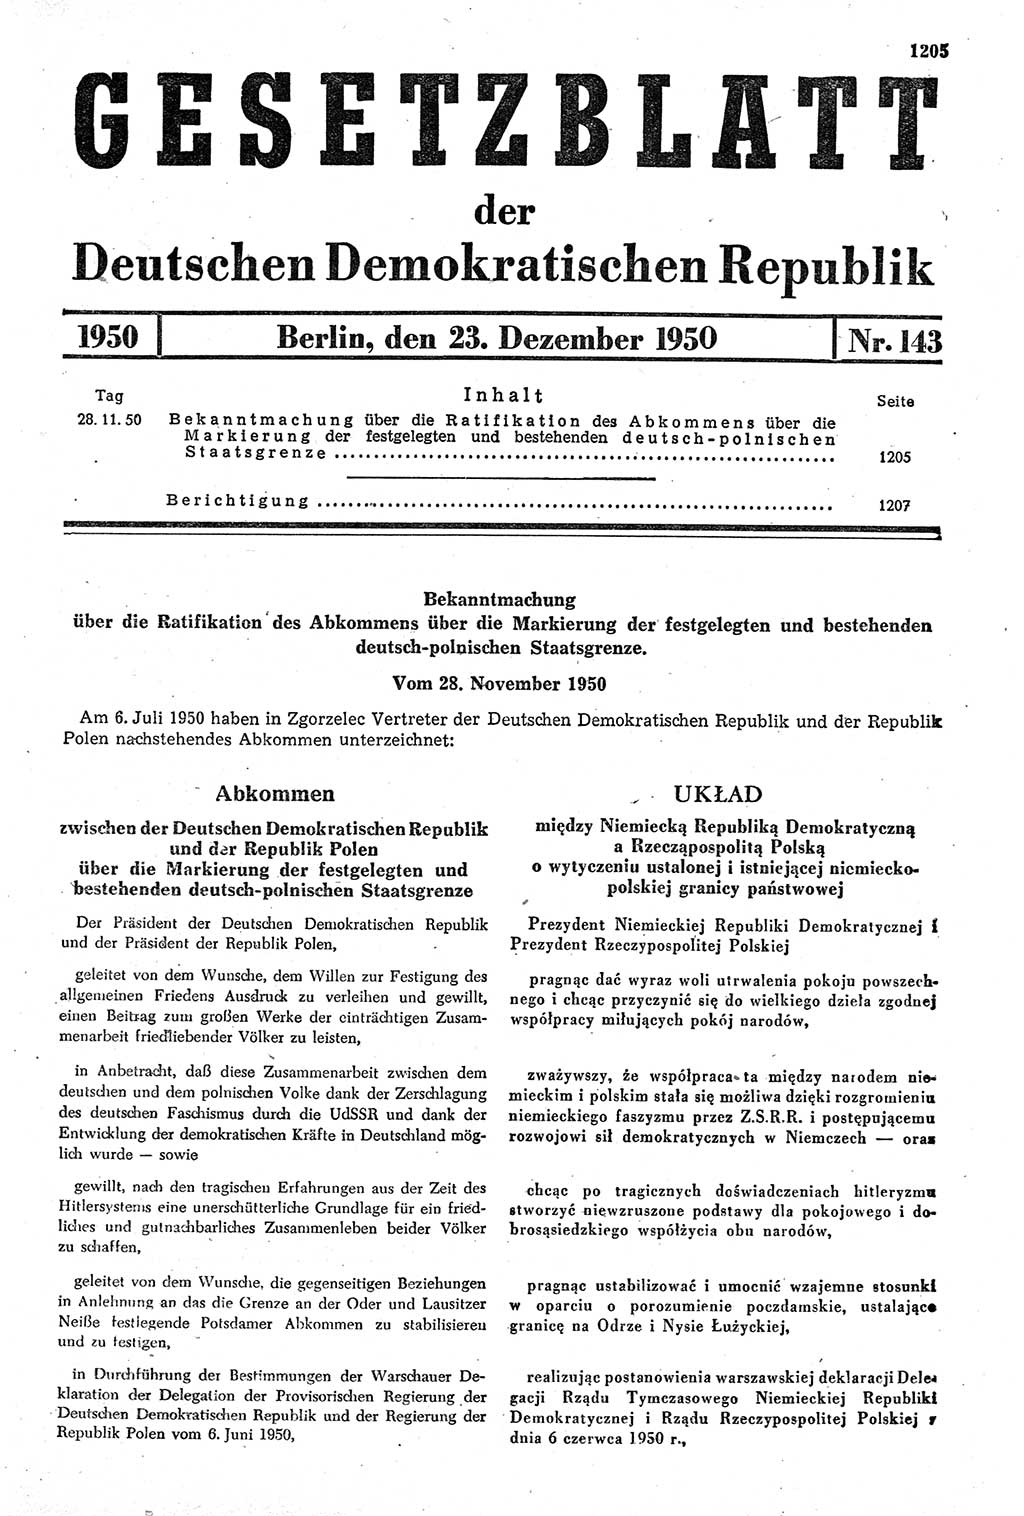 Gesetzblatt (GBl.) der Deutschen Demokratischen Republik (DDR) 1950, Seite 1205 (GBl. DDR 1950, S. 1205)